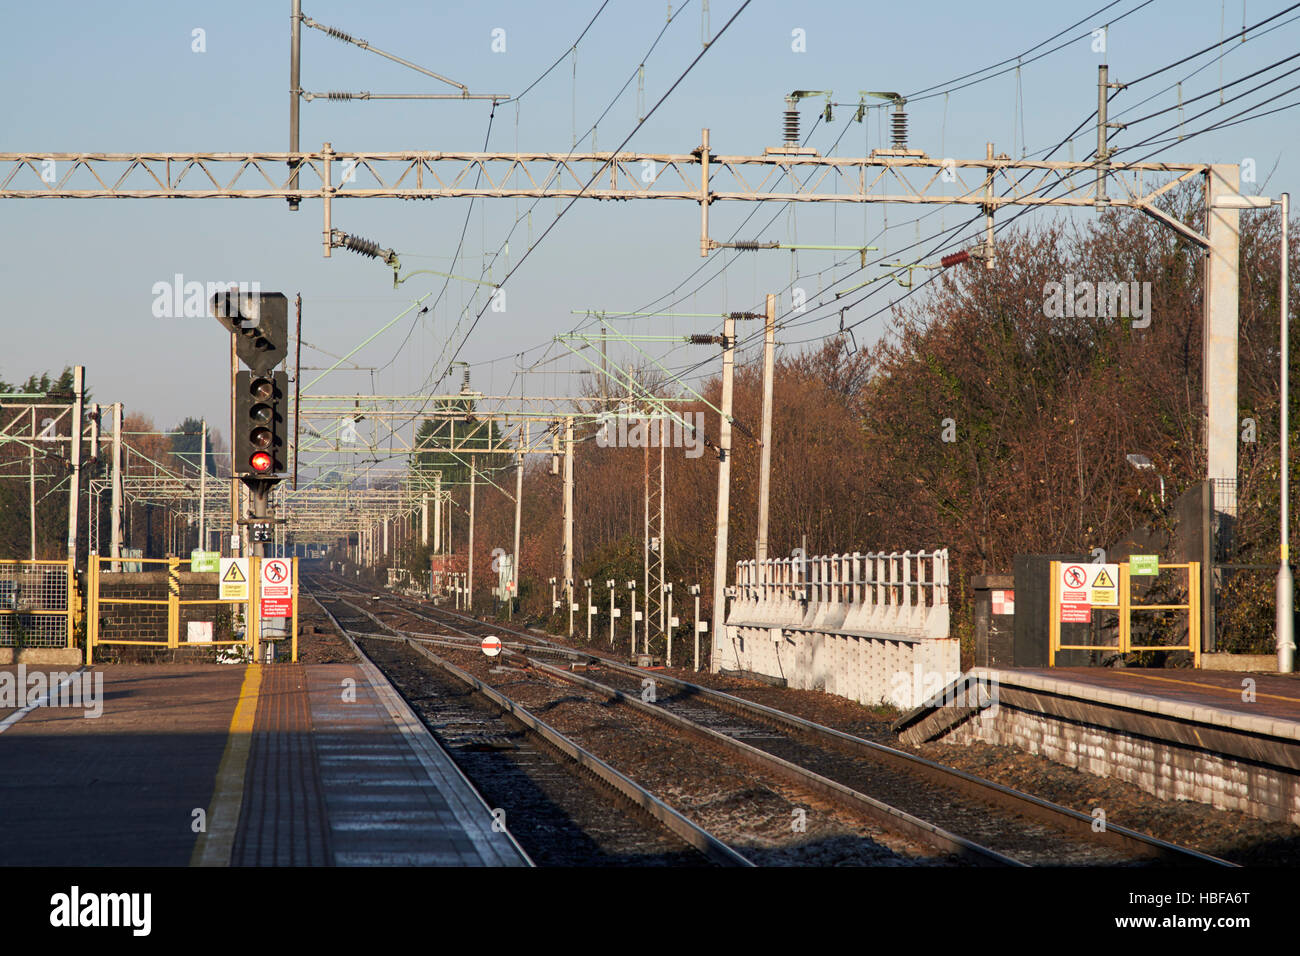 obenliegende Elektrizität Drähte auf der Schiene zu verfolgen, an Liverpool South Parkway station Stockfoto